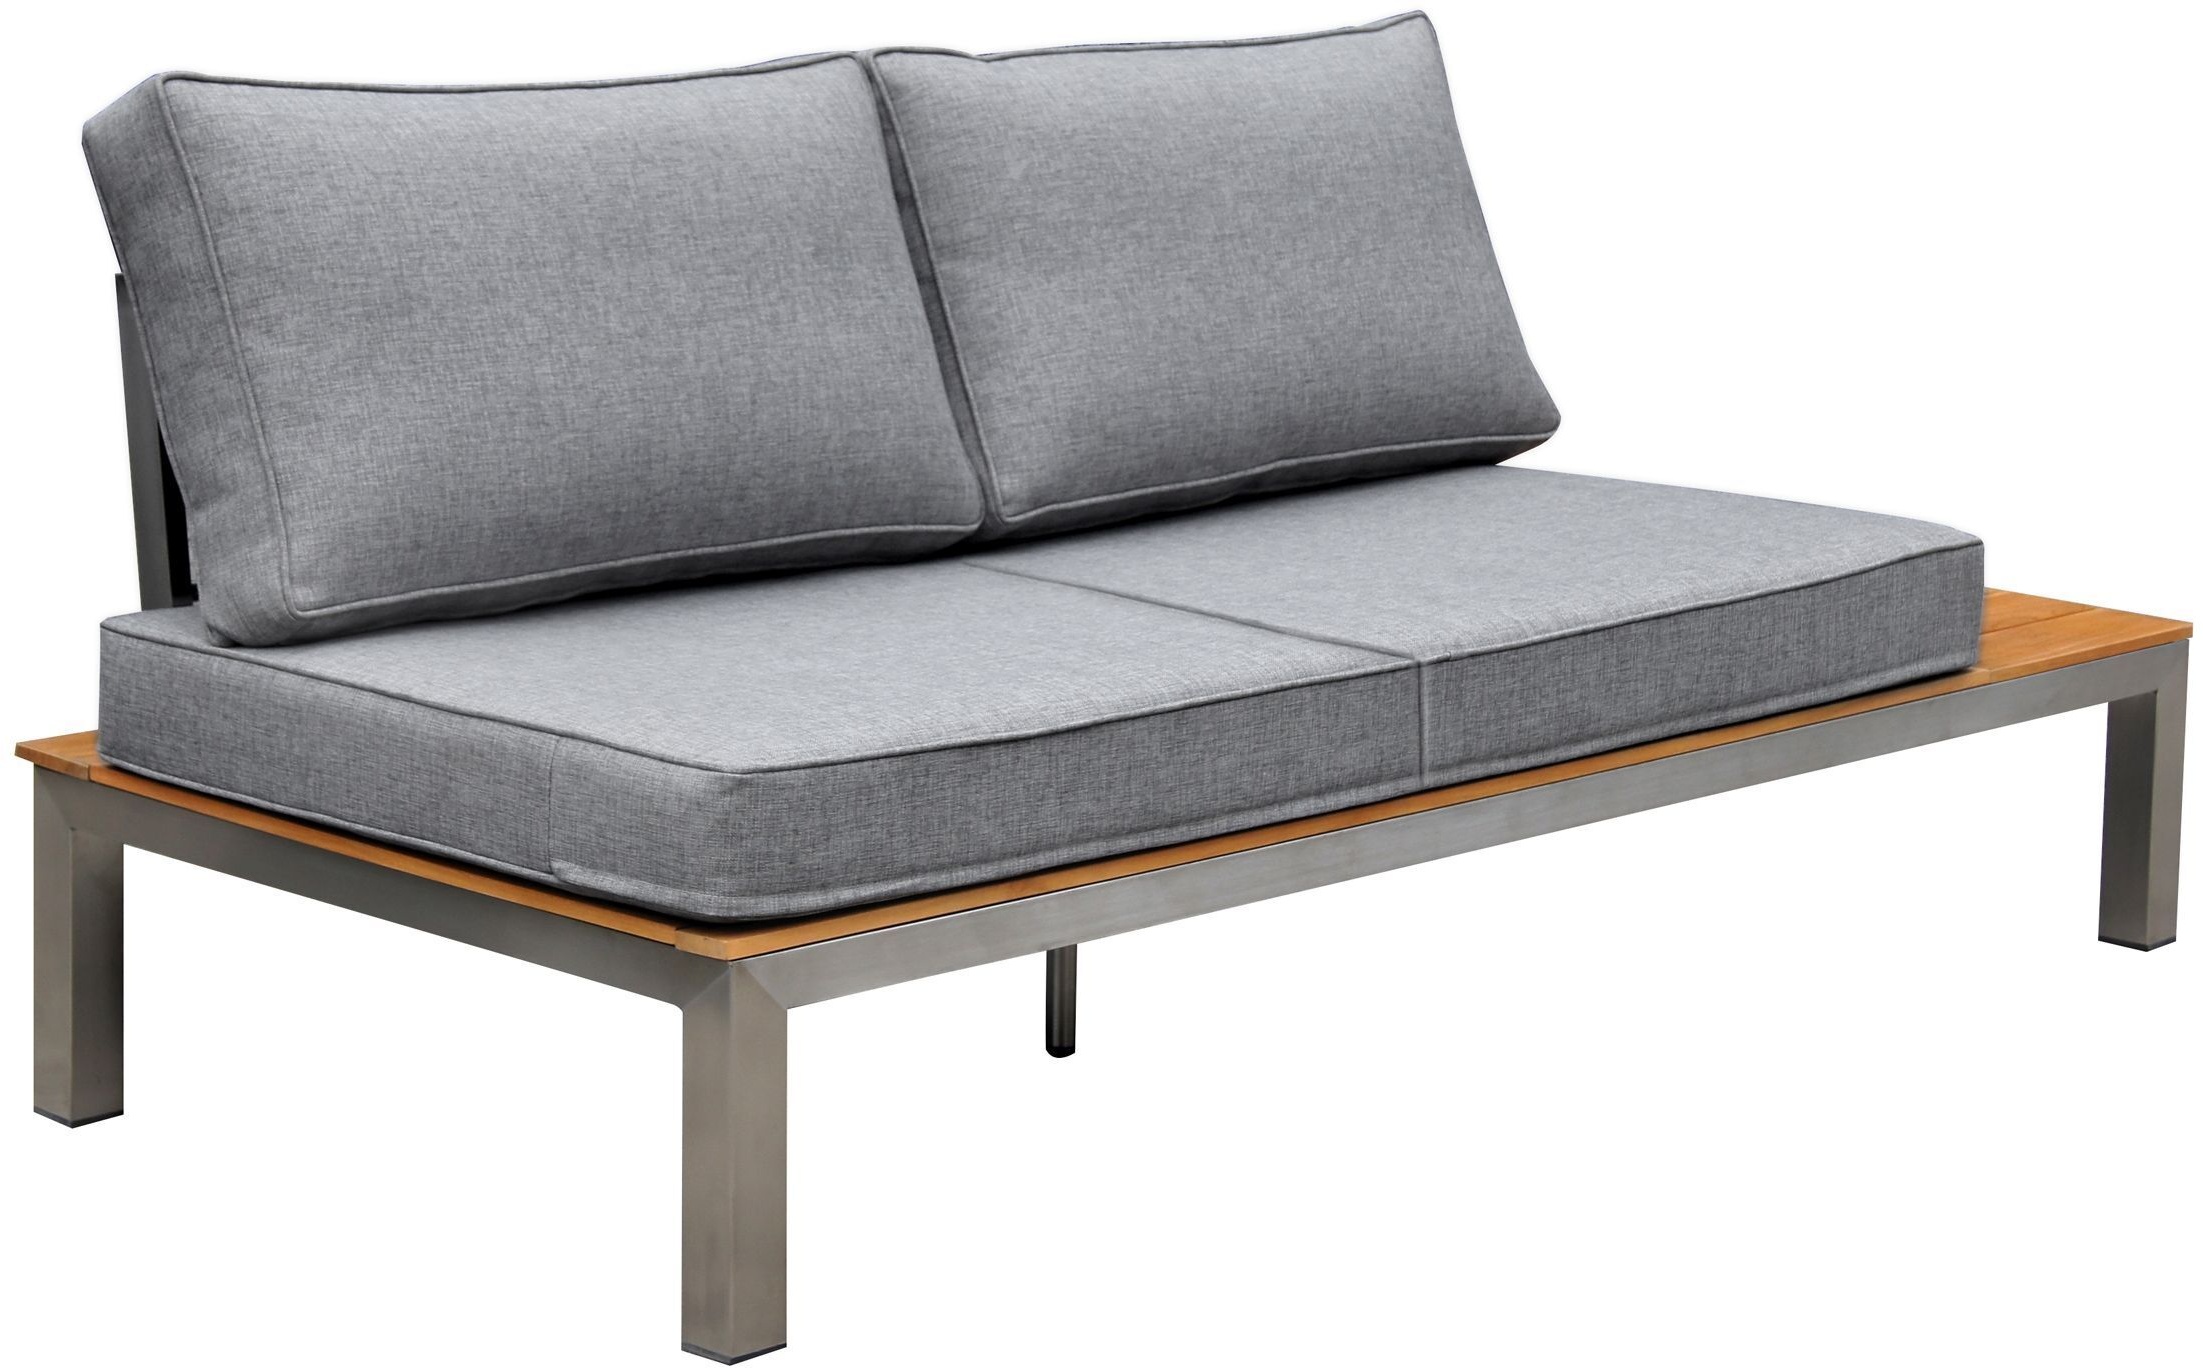 OUTFLEXX 2-Sitzer Sofa, silber/grau, Edelstahl/FSC-Teakholz/Textil, 168 x 79 x 64 cm